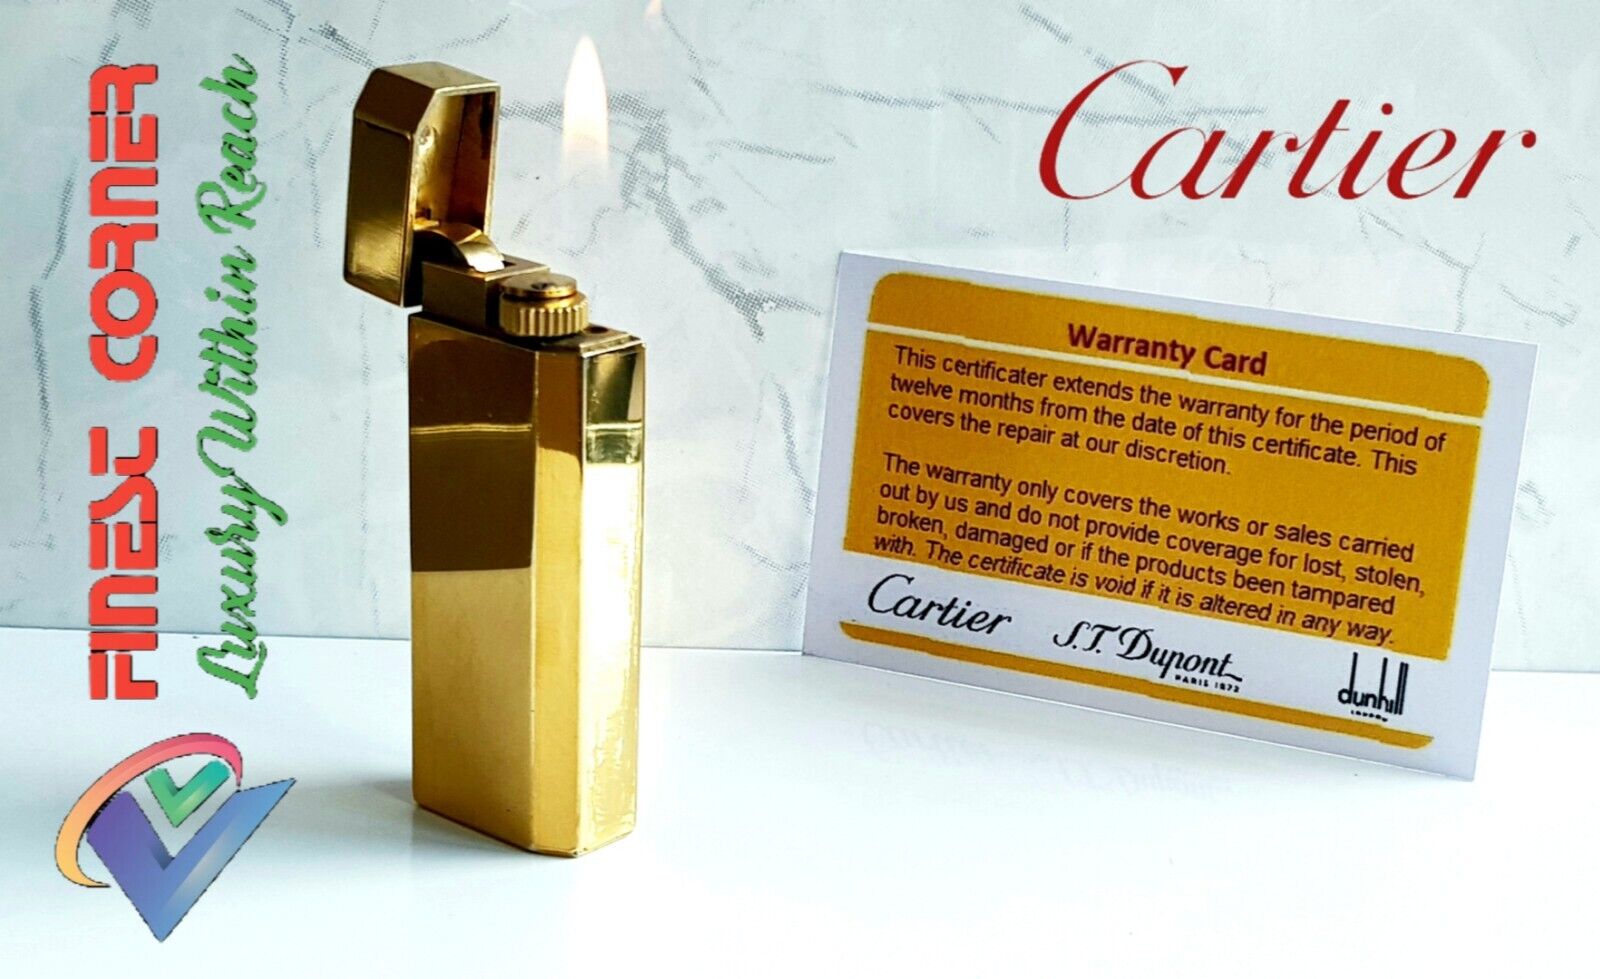 Cartier Lighter Rare Gold Must De Overhauled Serviced Warranty Ex Condition Q4